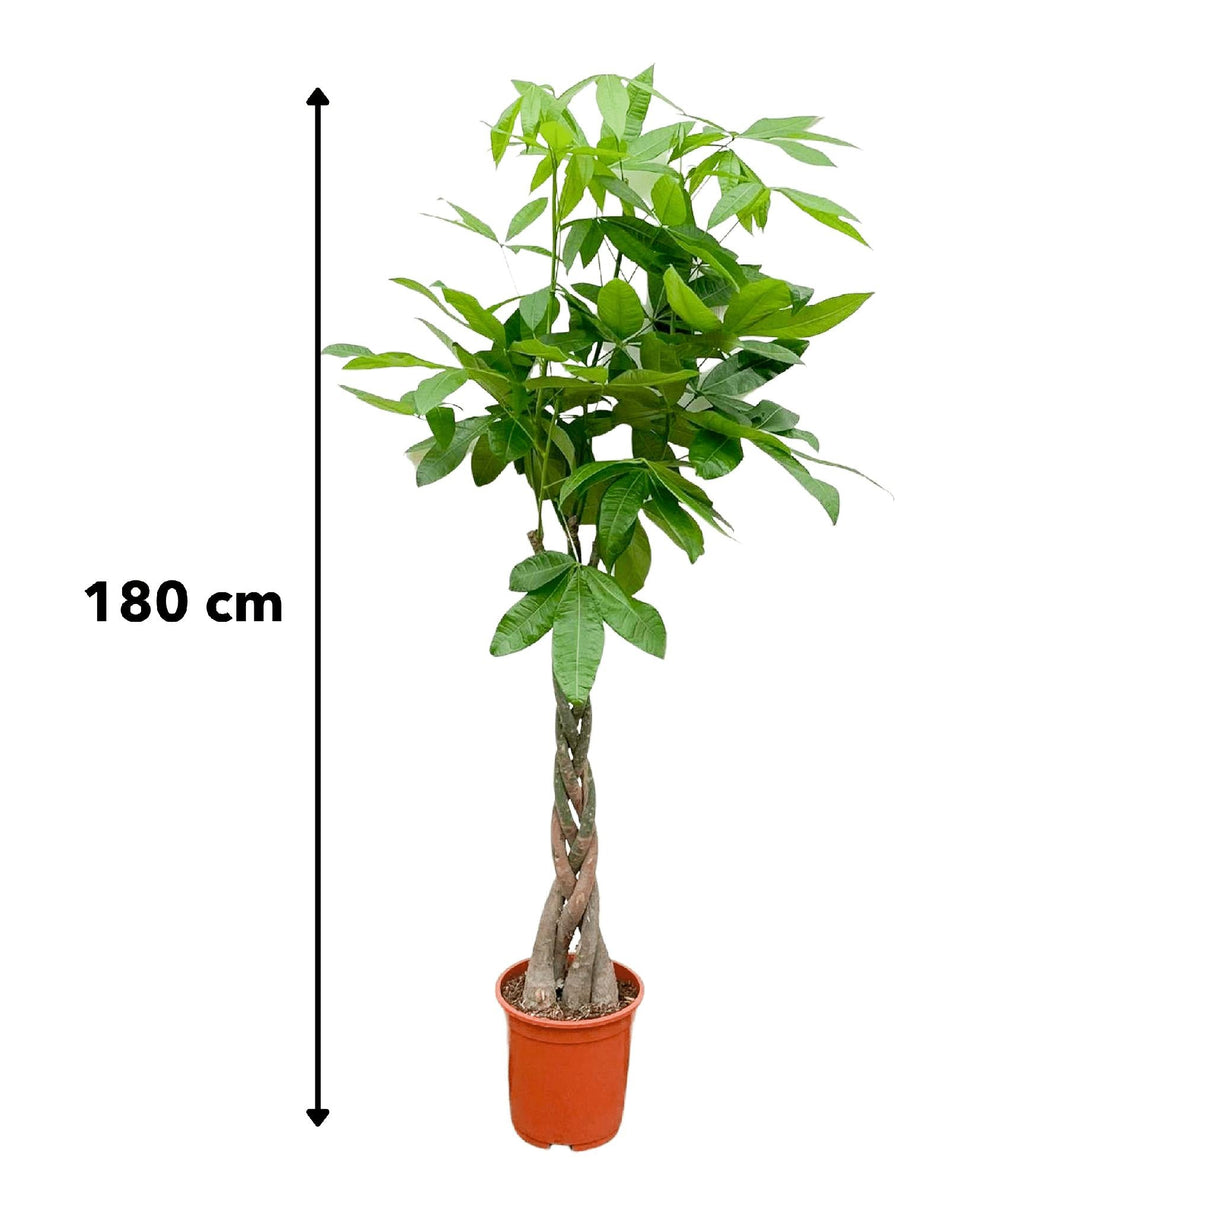 Livraison plante Pachira Aquatica tressé - 160cm - ø27